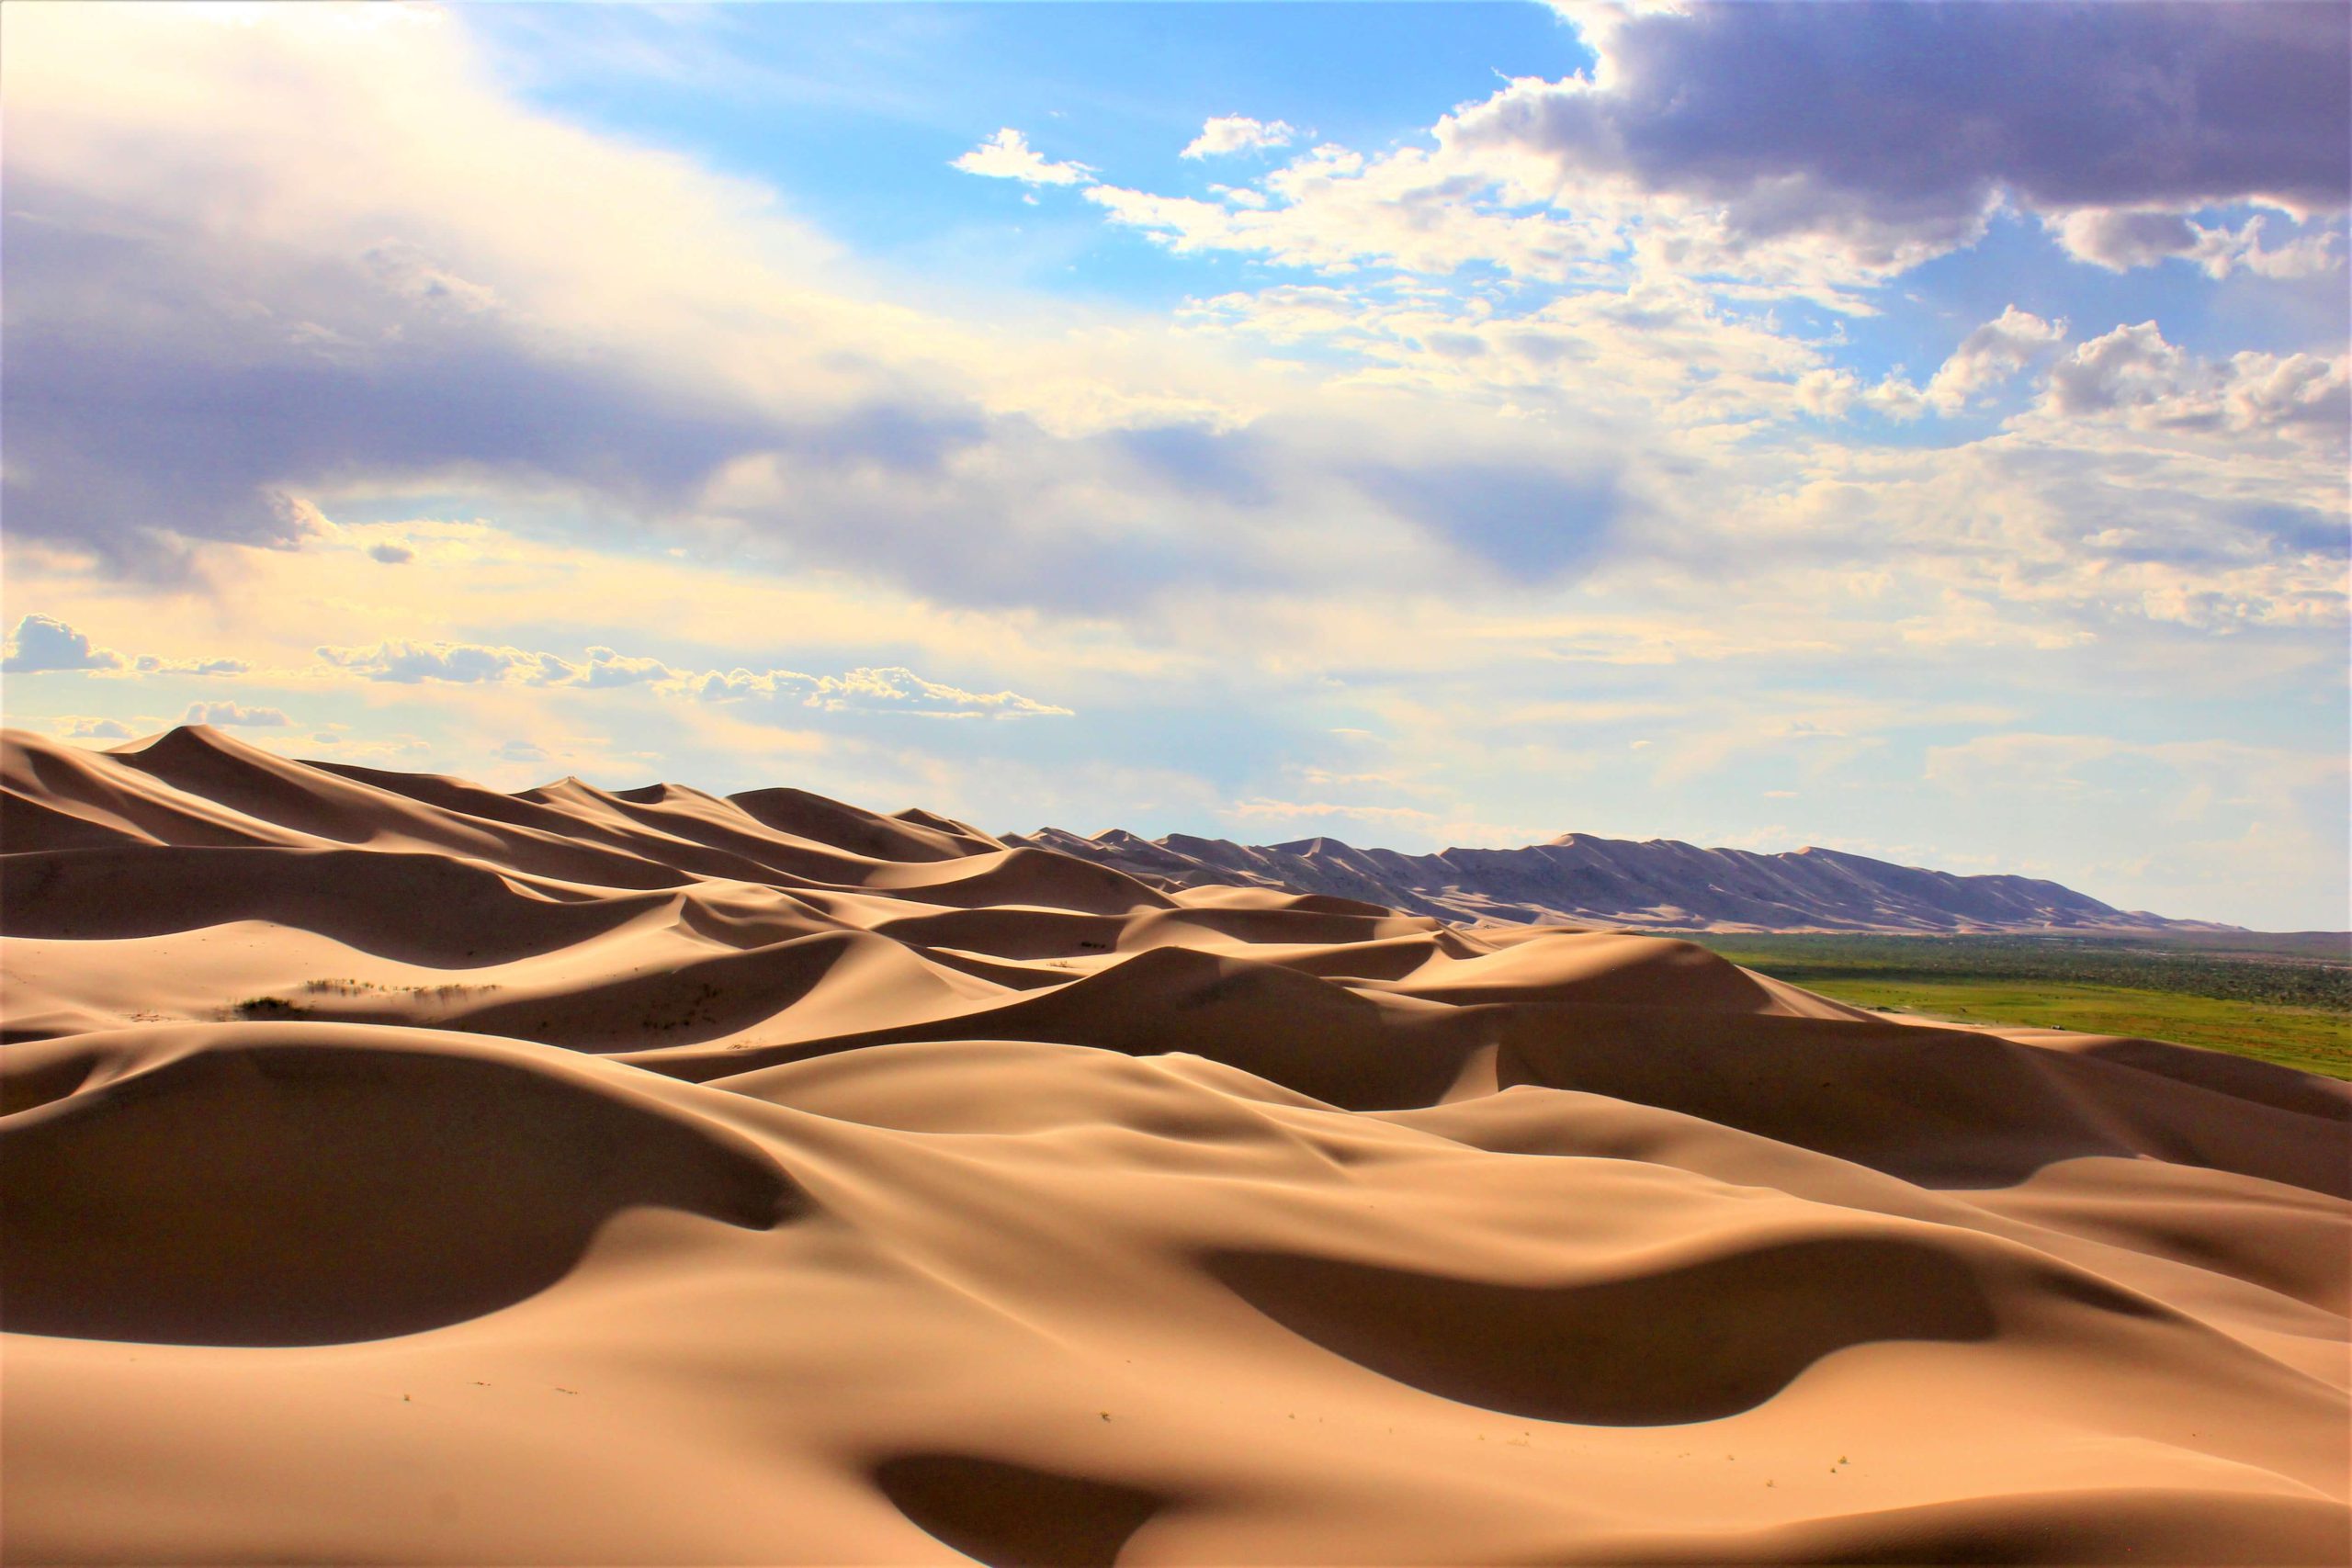 Khongoryn Els Sand Dune